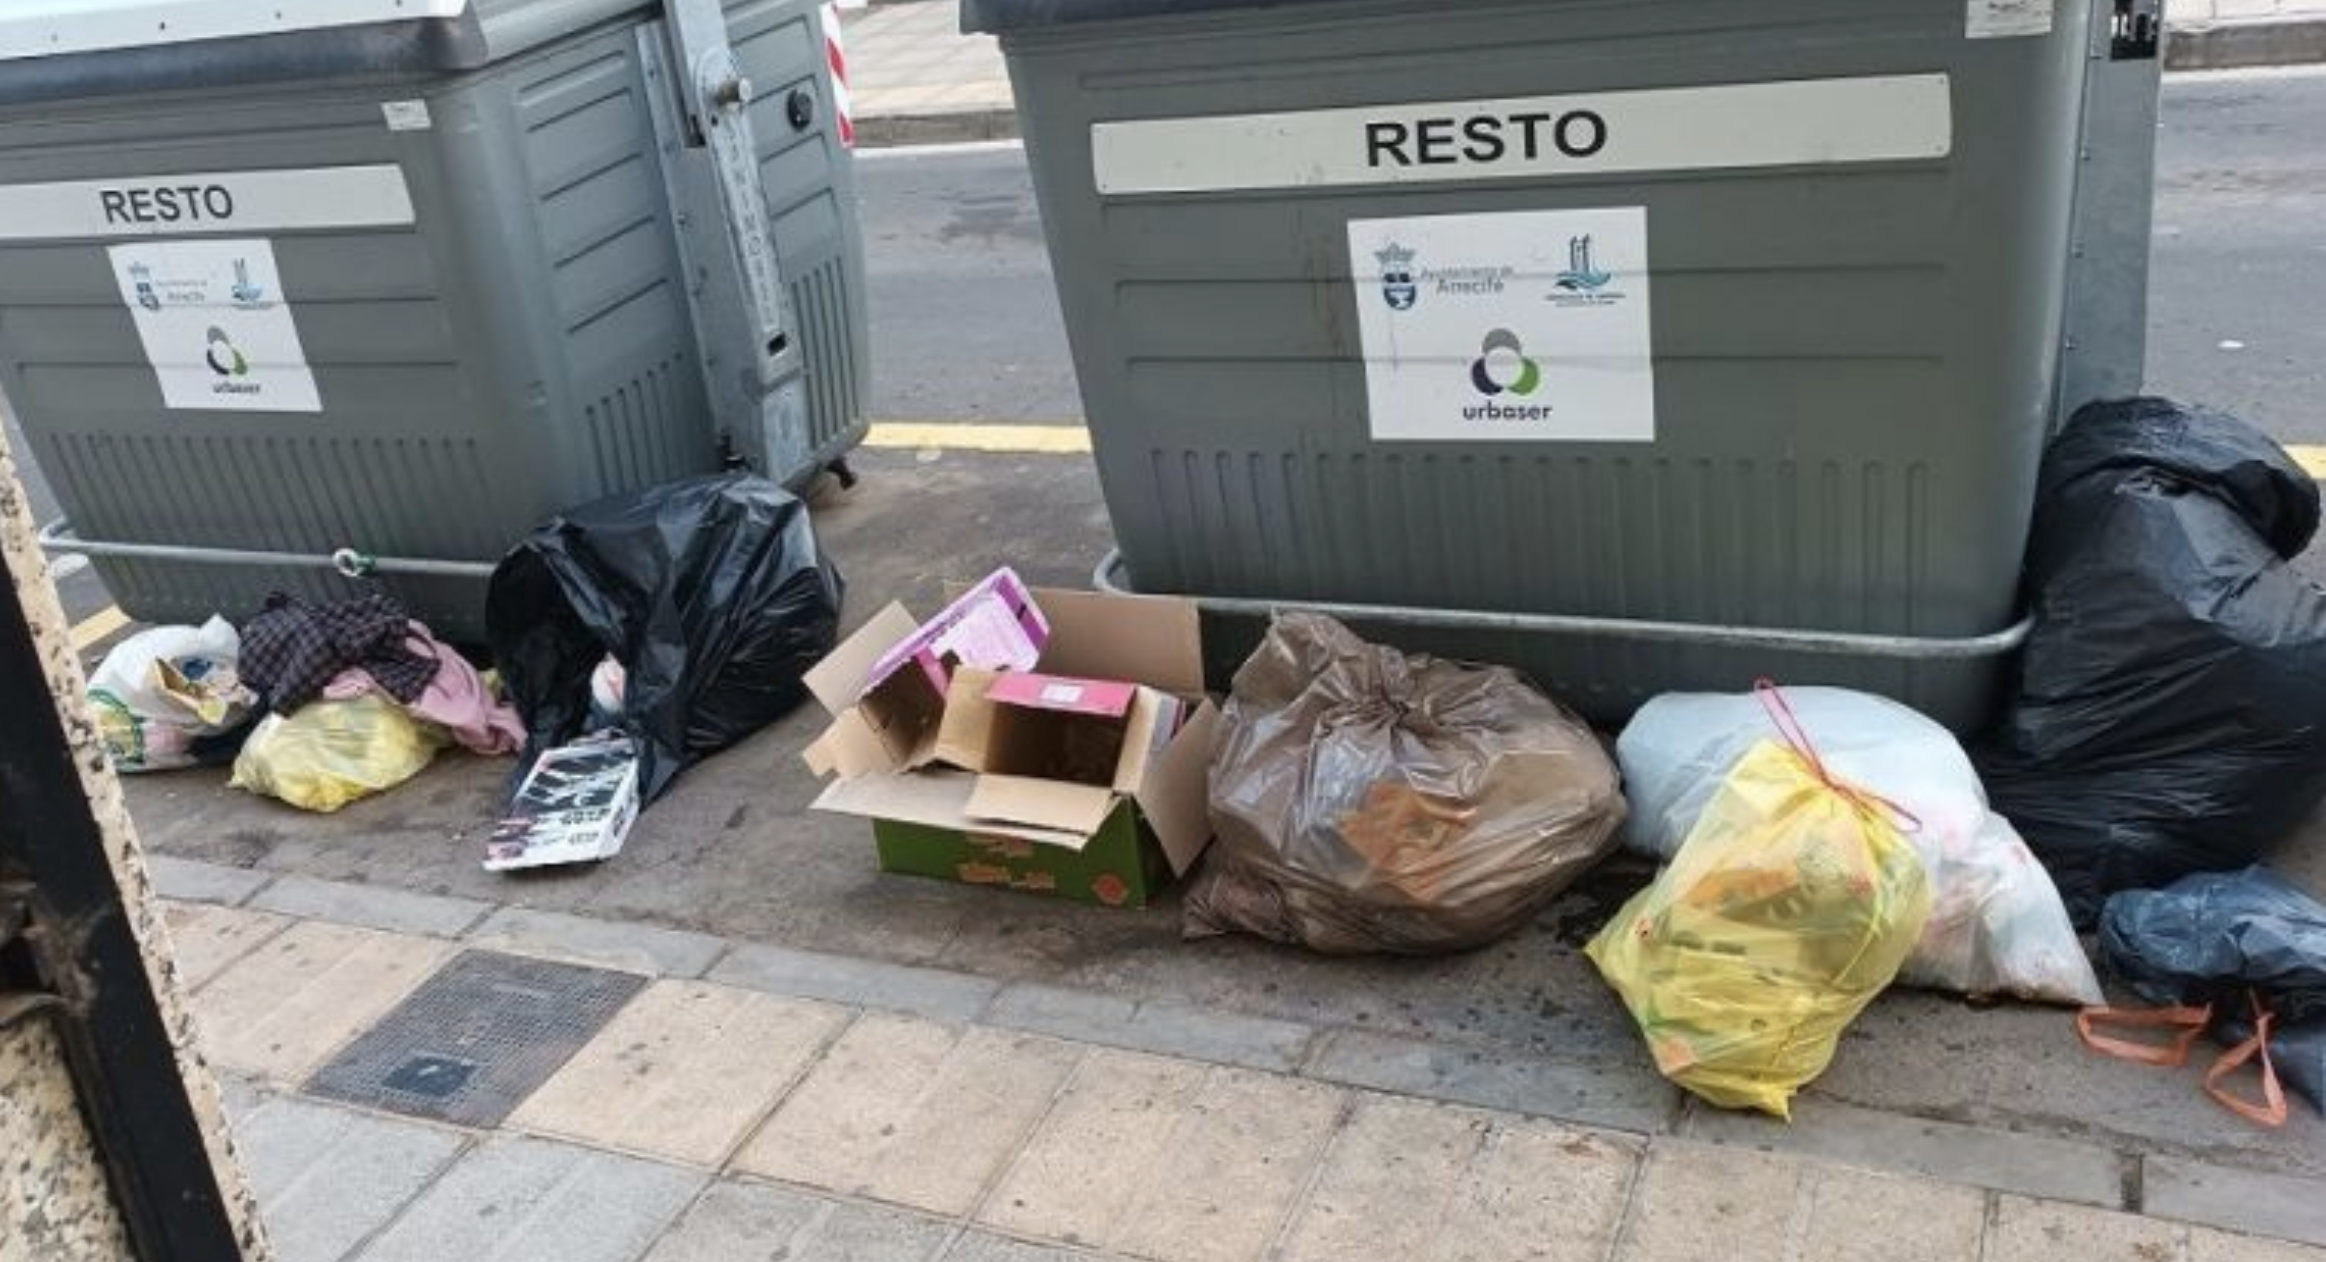 Unos vecinos de Arrecife se quejan del cúmulo de basura que se amontona en el portal de su edificio